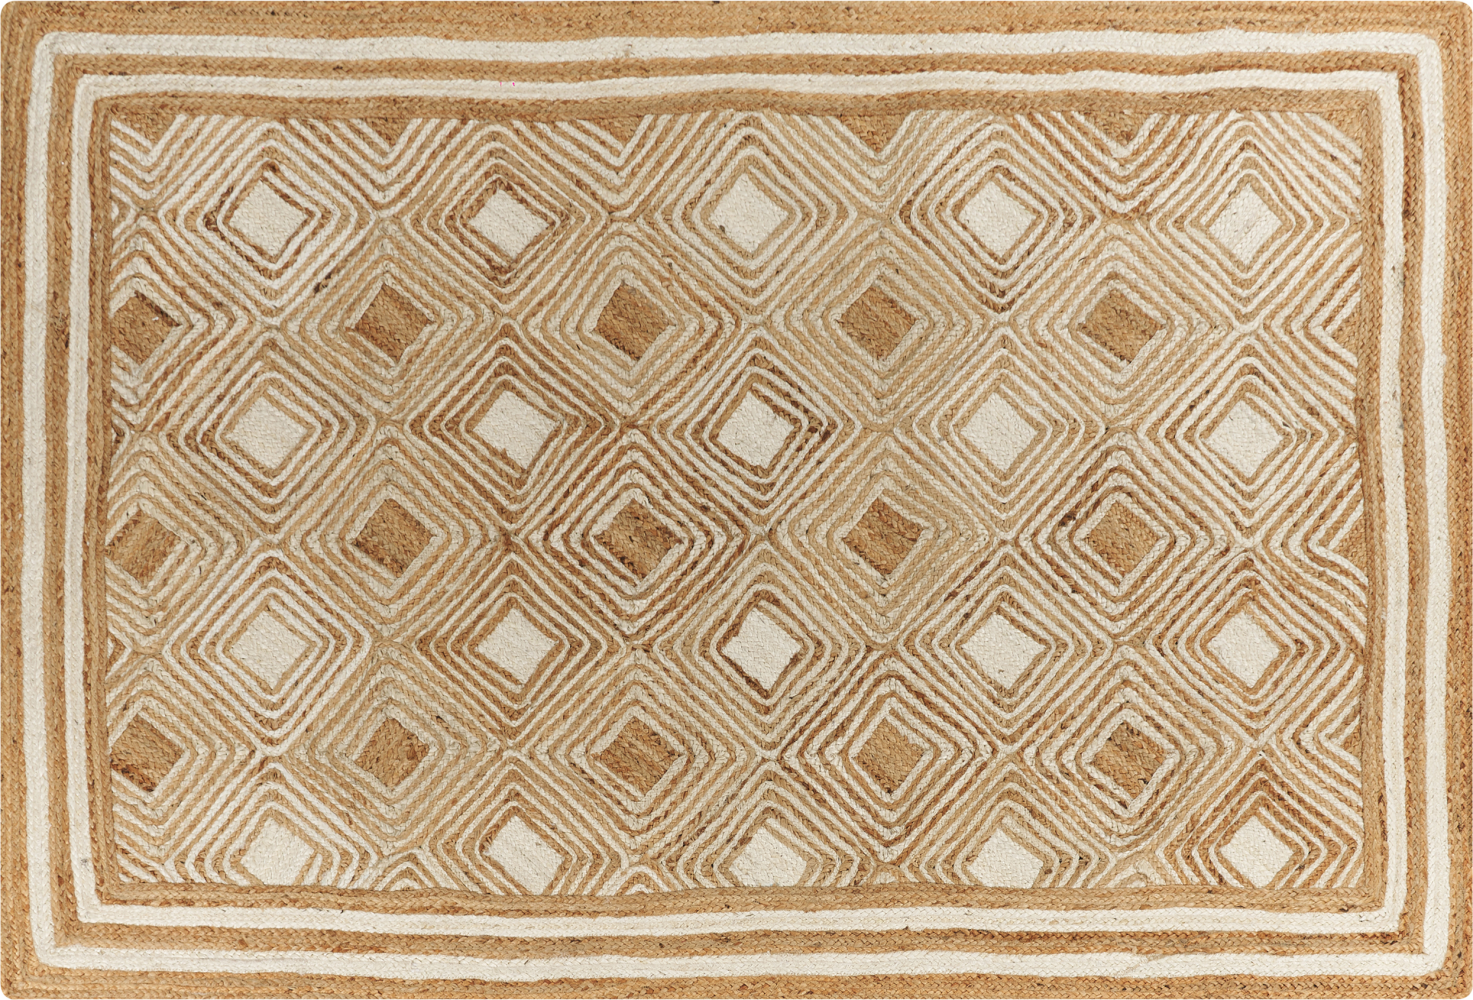 Teppich Jute beige 160 x 230 cm geometrisches Muster Kurzflor MENGEN Bild 1